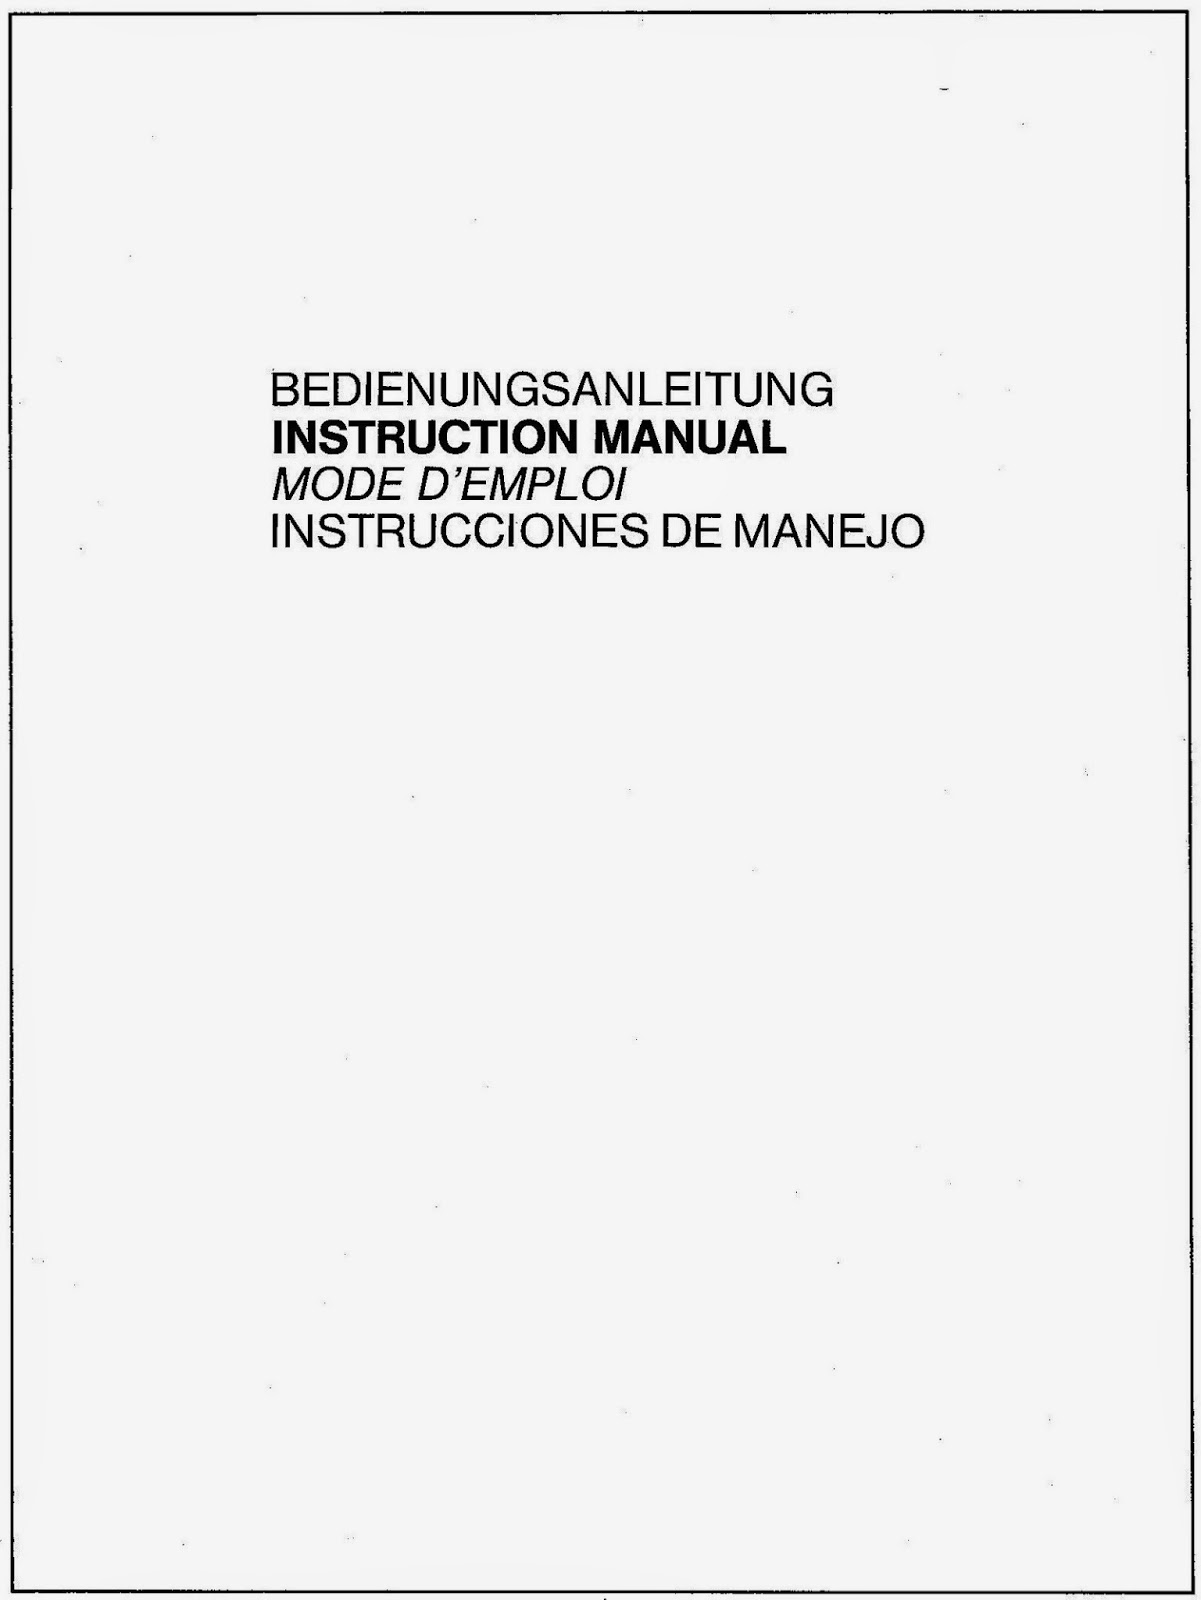 Manual De Panasonic Electronic Typewriter R340